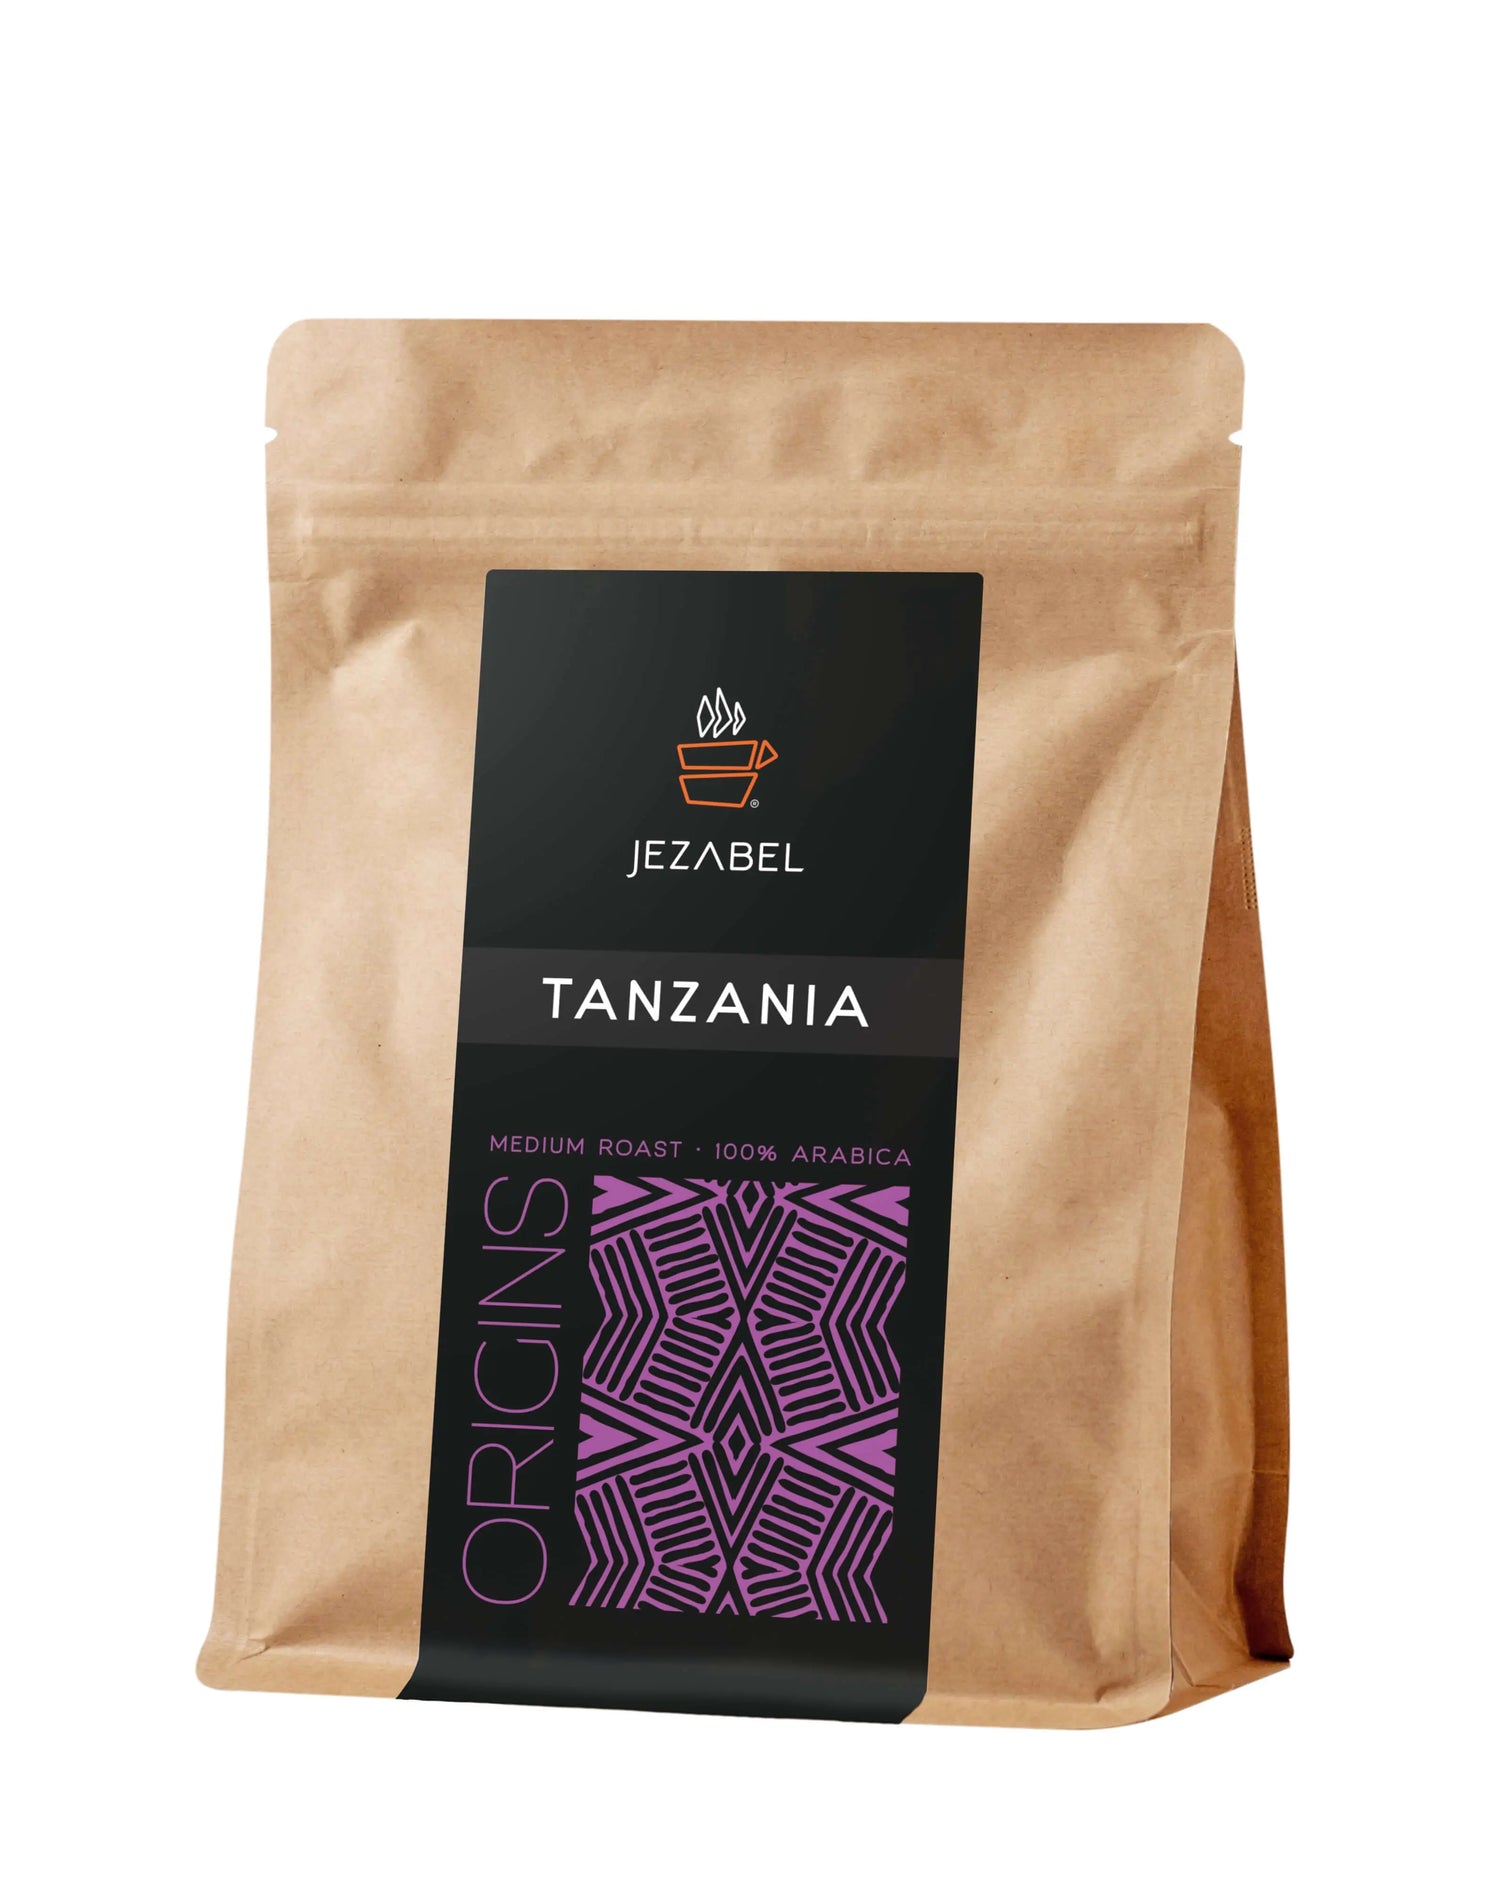 Jezabel Cafea Origine Tanzania